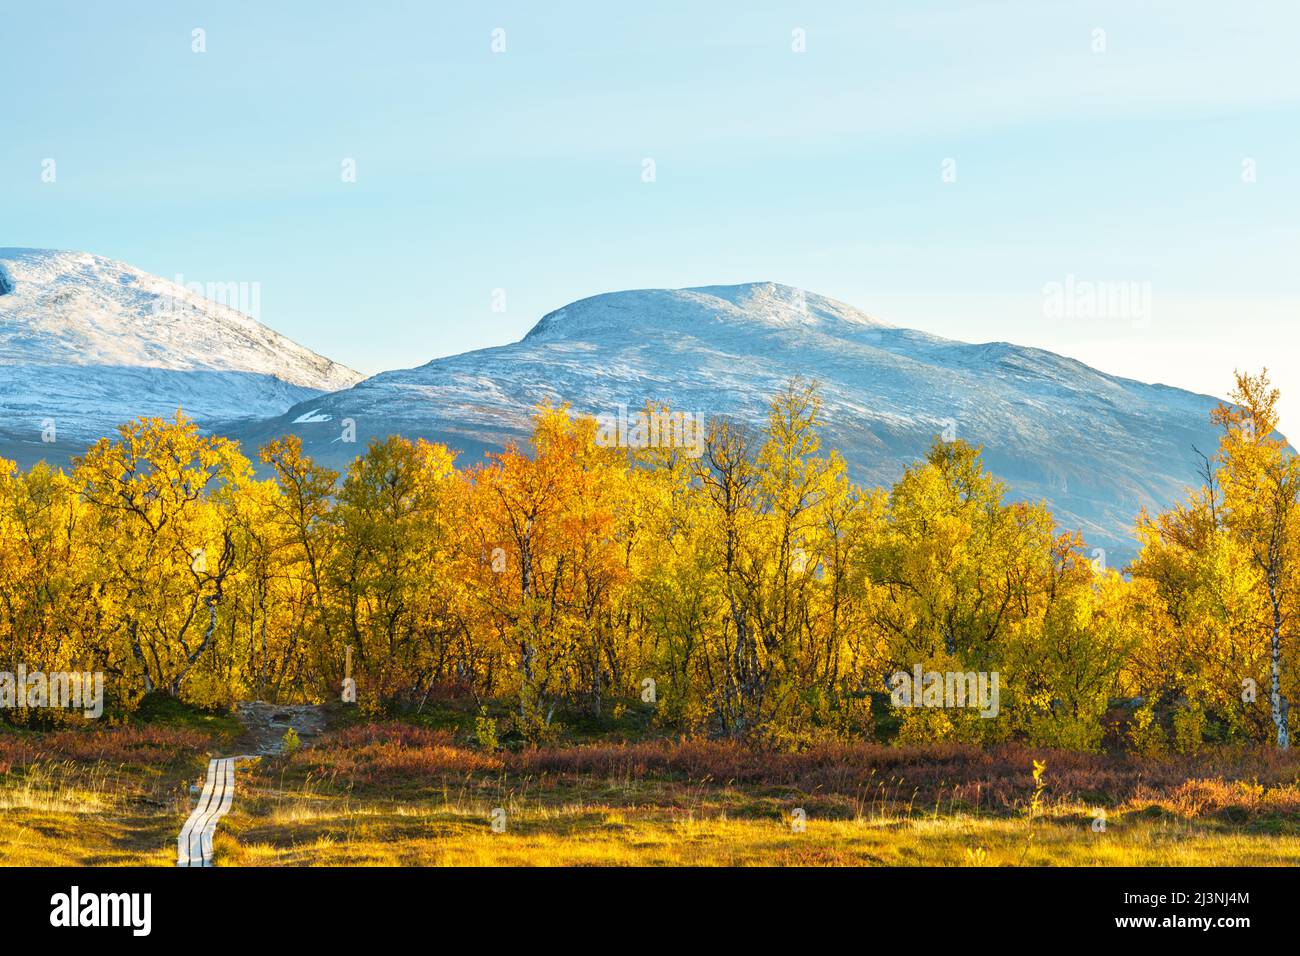 Parc national d'Abisko en septembre avec des couleurs d'automne et de la neige sur les montagnes, parc national d'Abisko, Laponie suédoise, Suède Banque D'Images